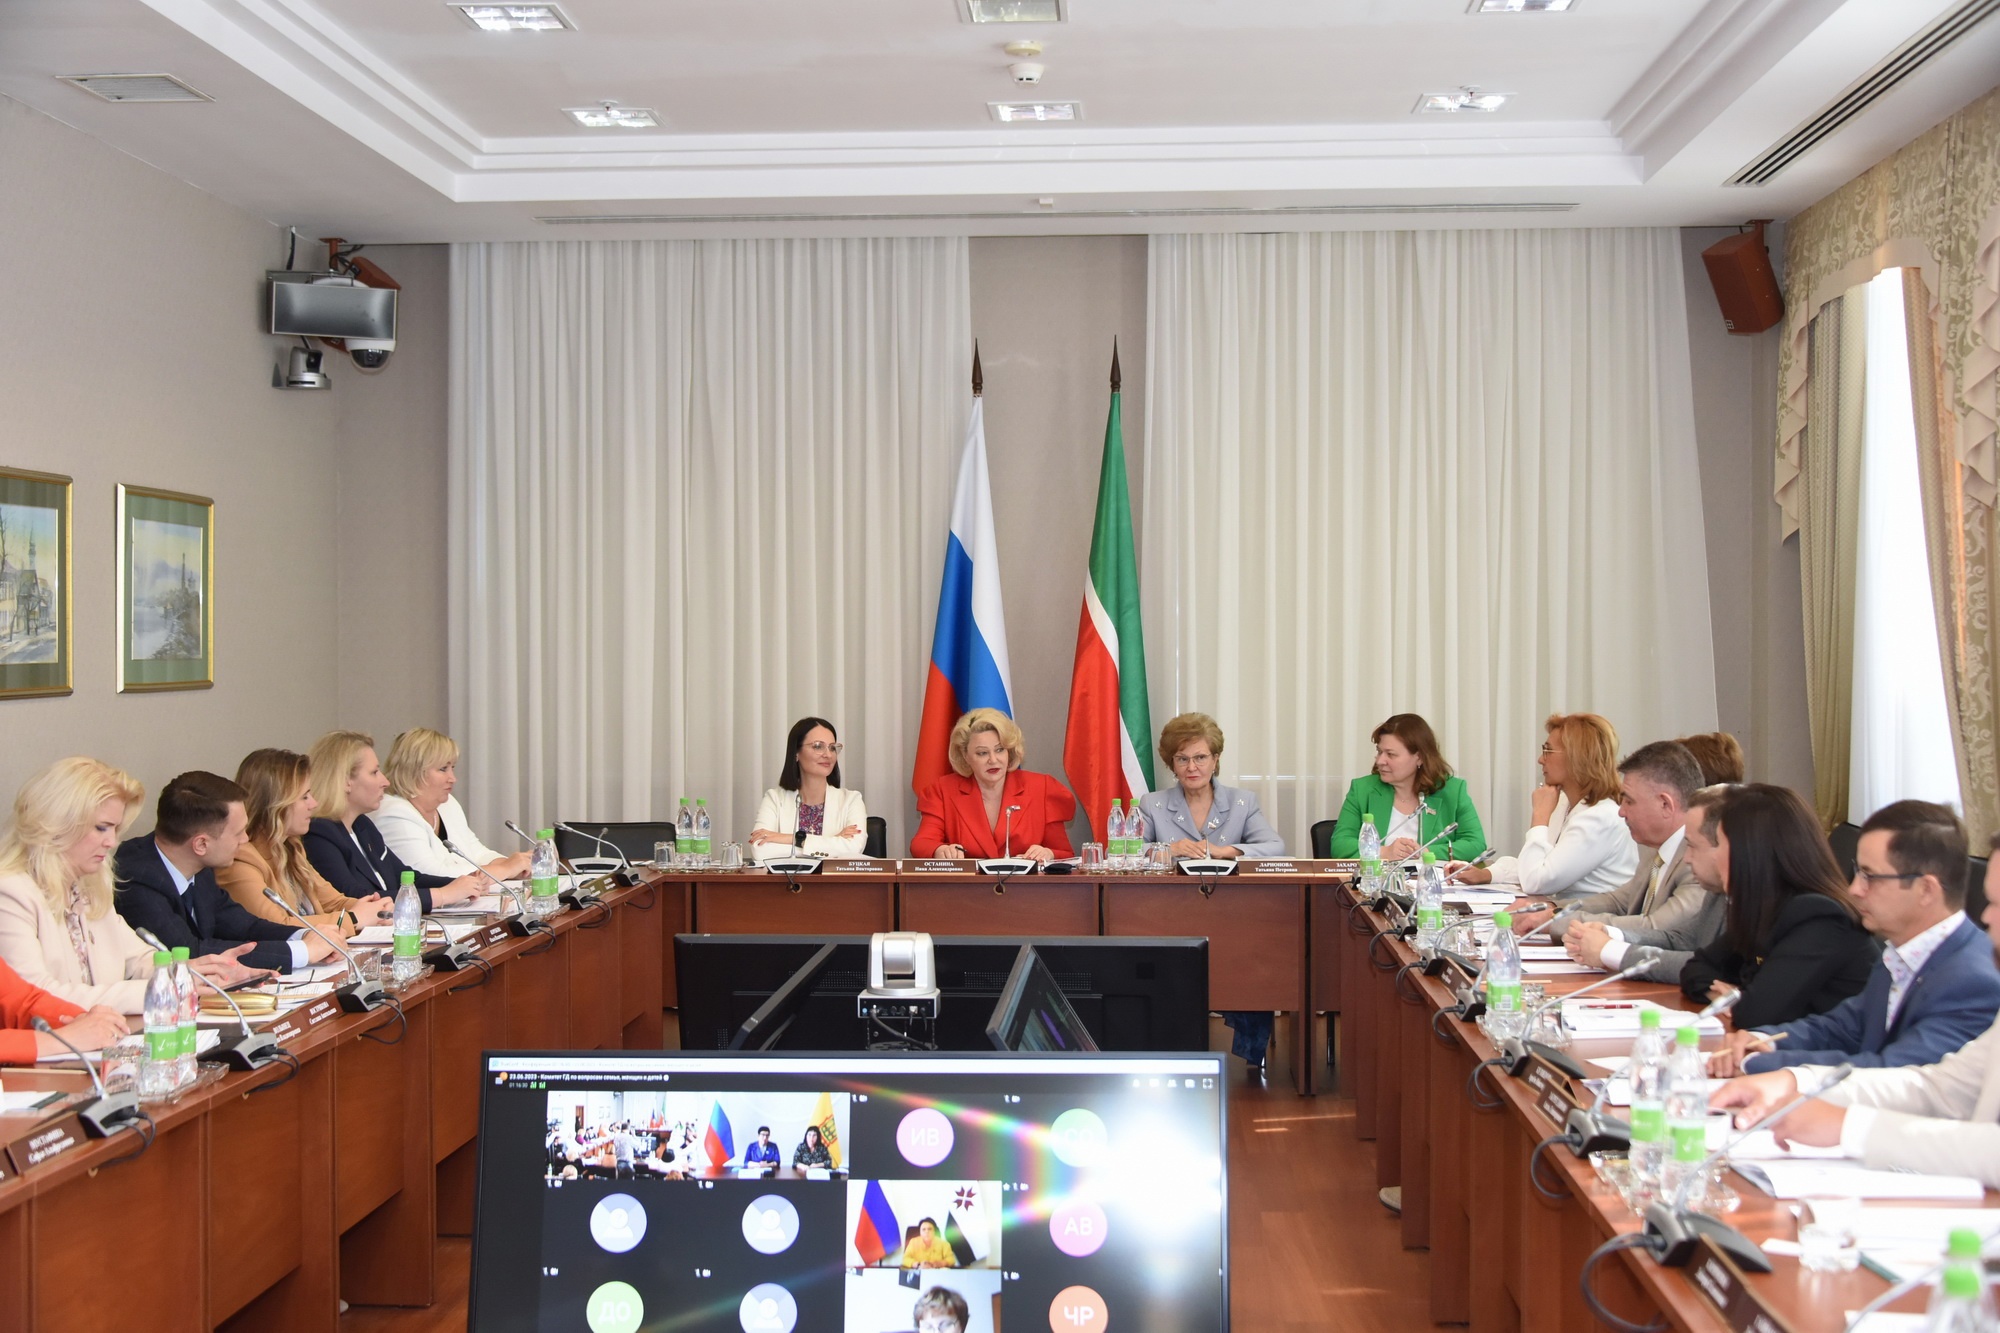 Вопросы социальной поддержки семей с детьми обсудили на заседании круглого стола в Госсовете Татарстана